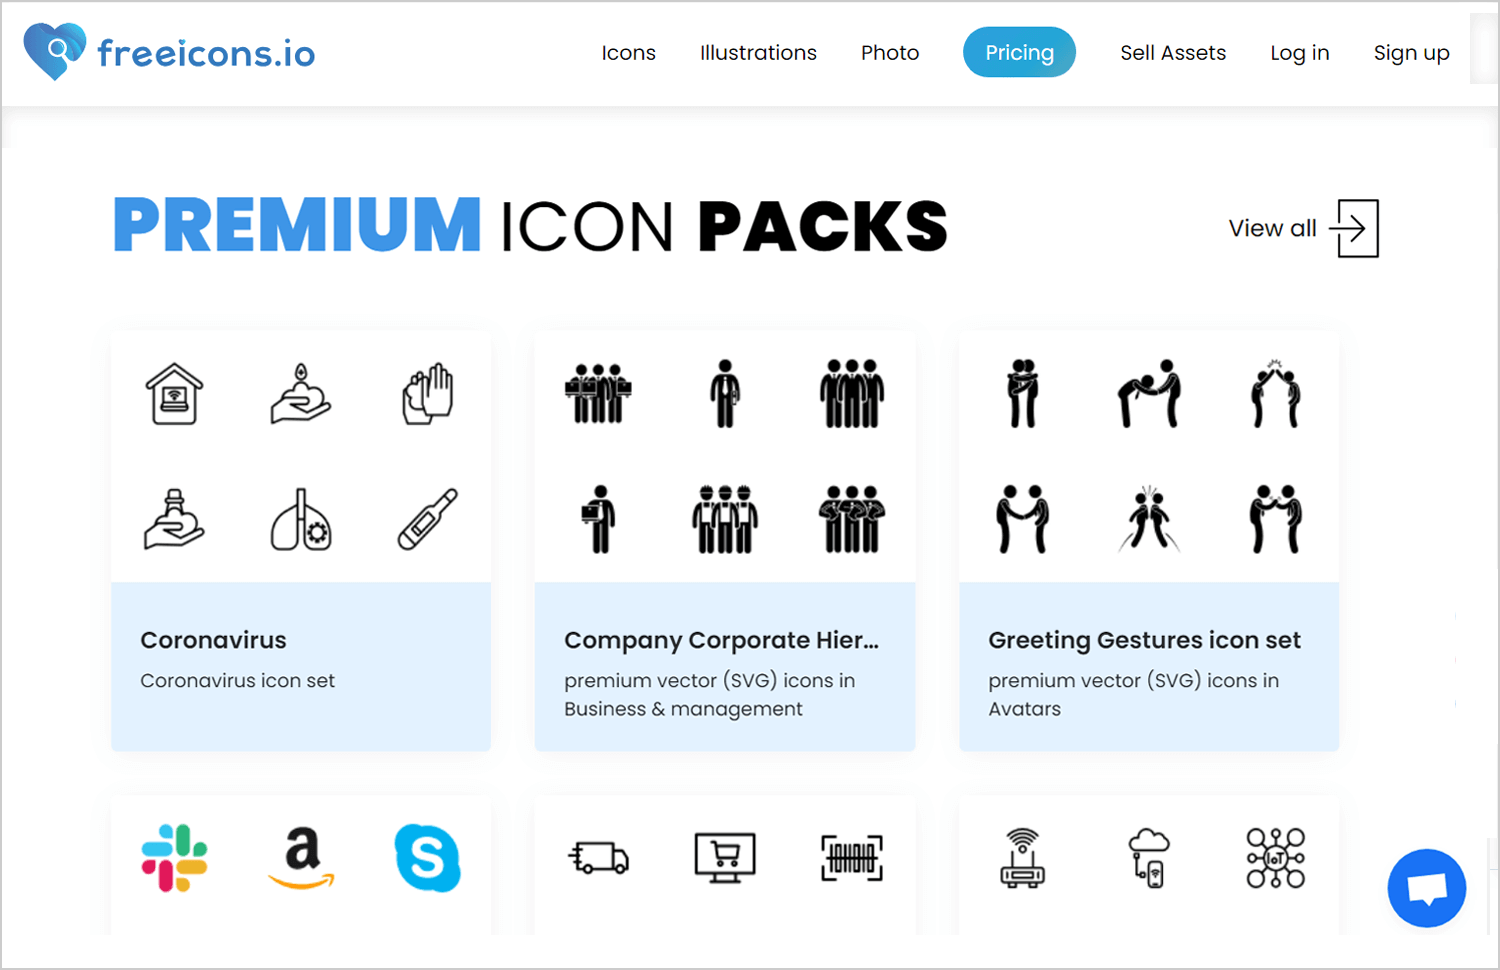 Premium icon packs on Freeicons.io